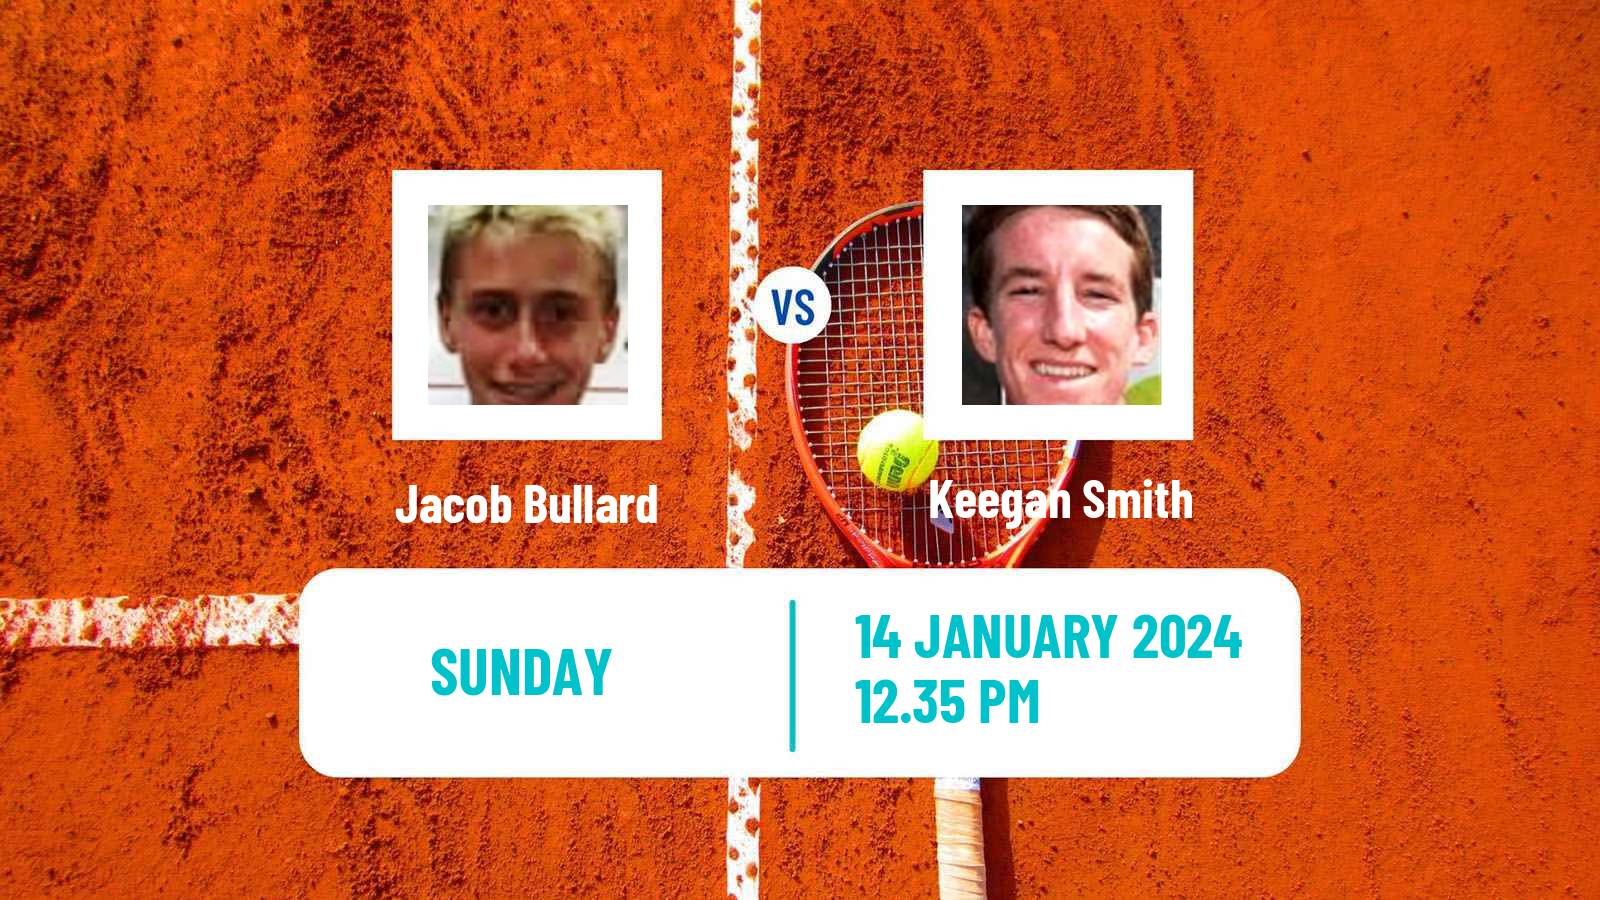 Tennis Indian Wells Challenger Men Jacob Bullard - Keegan Smith